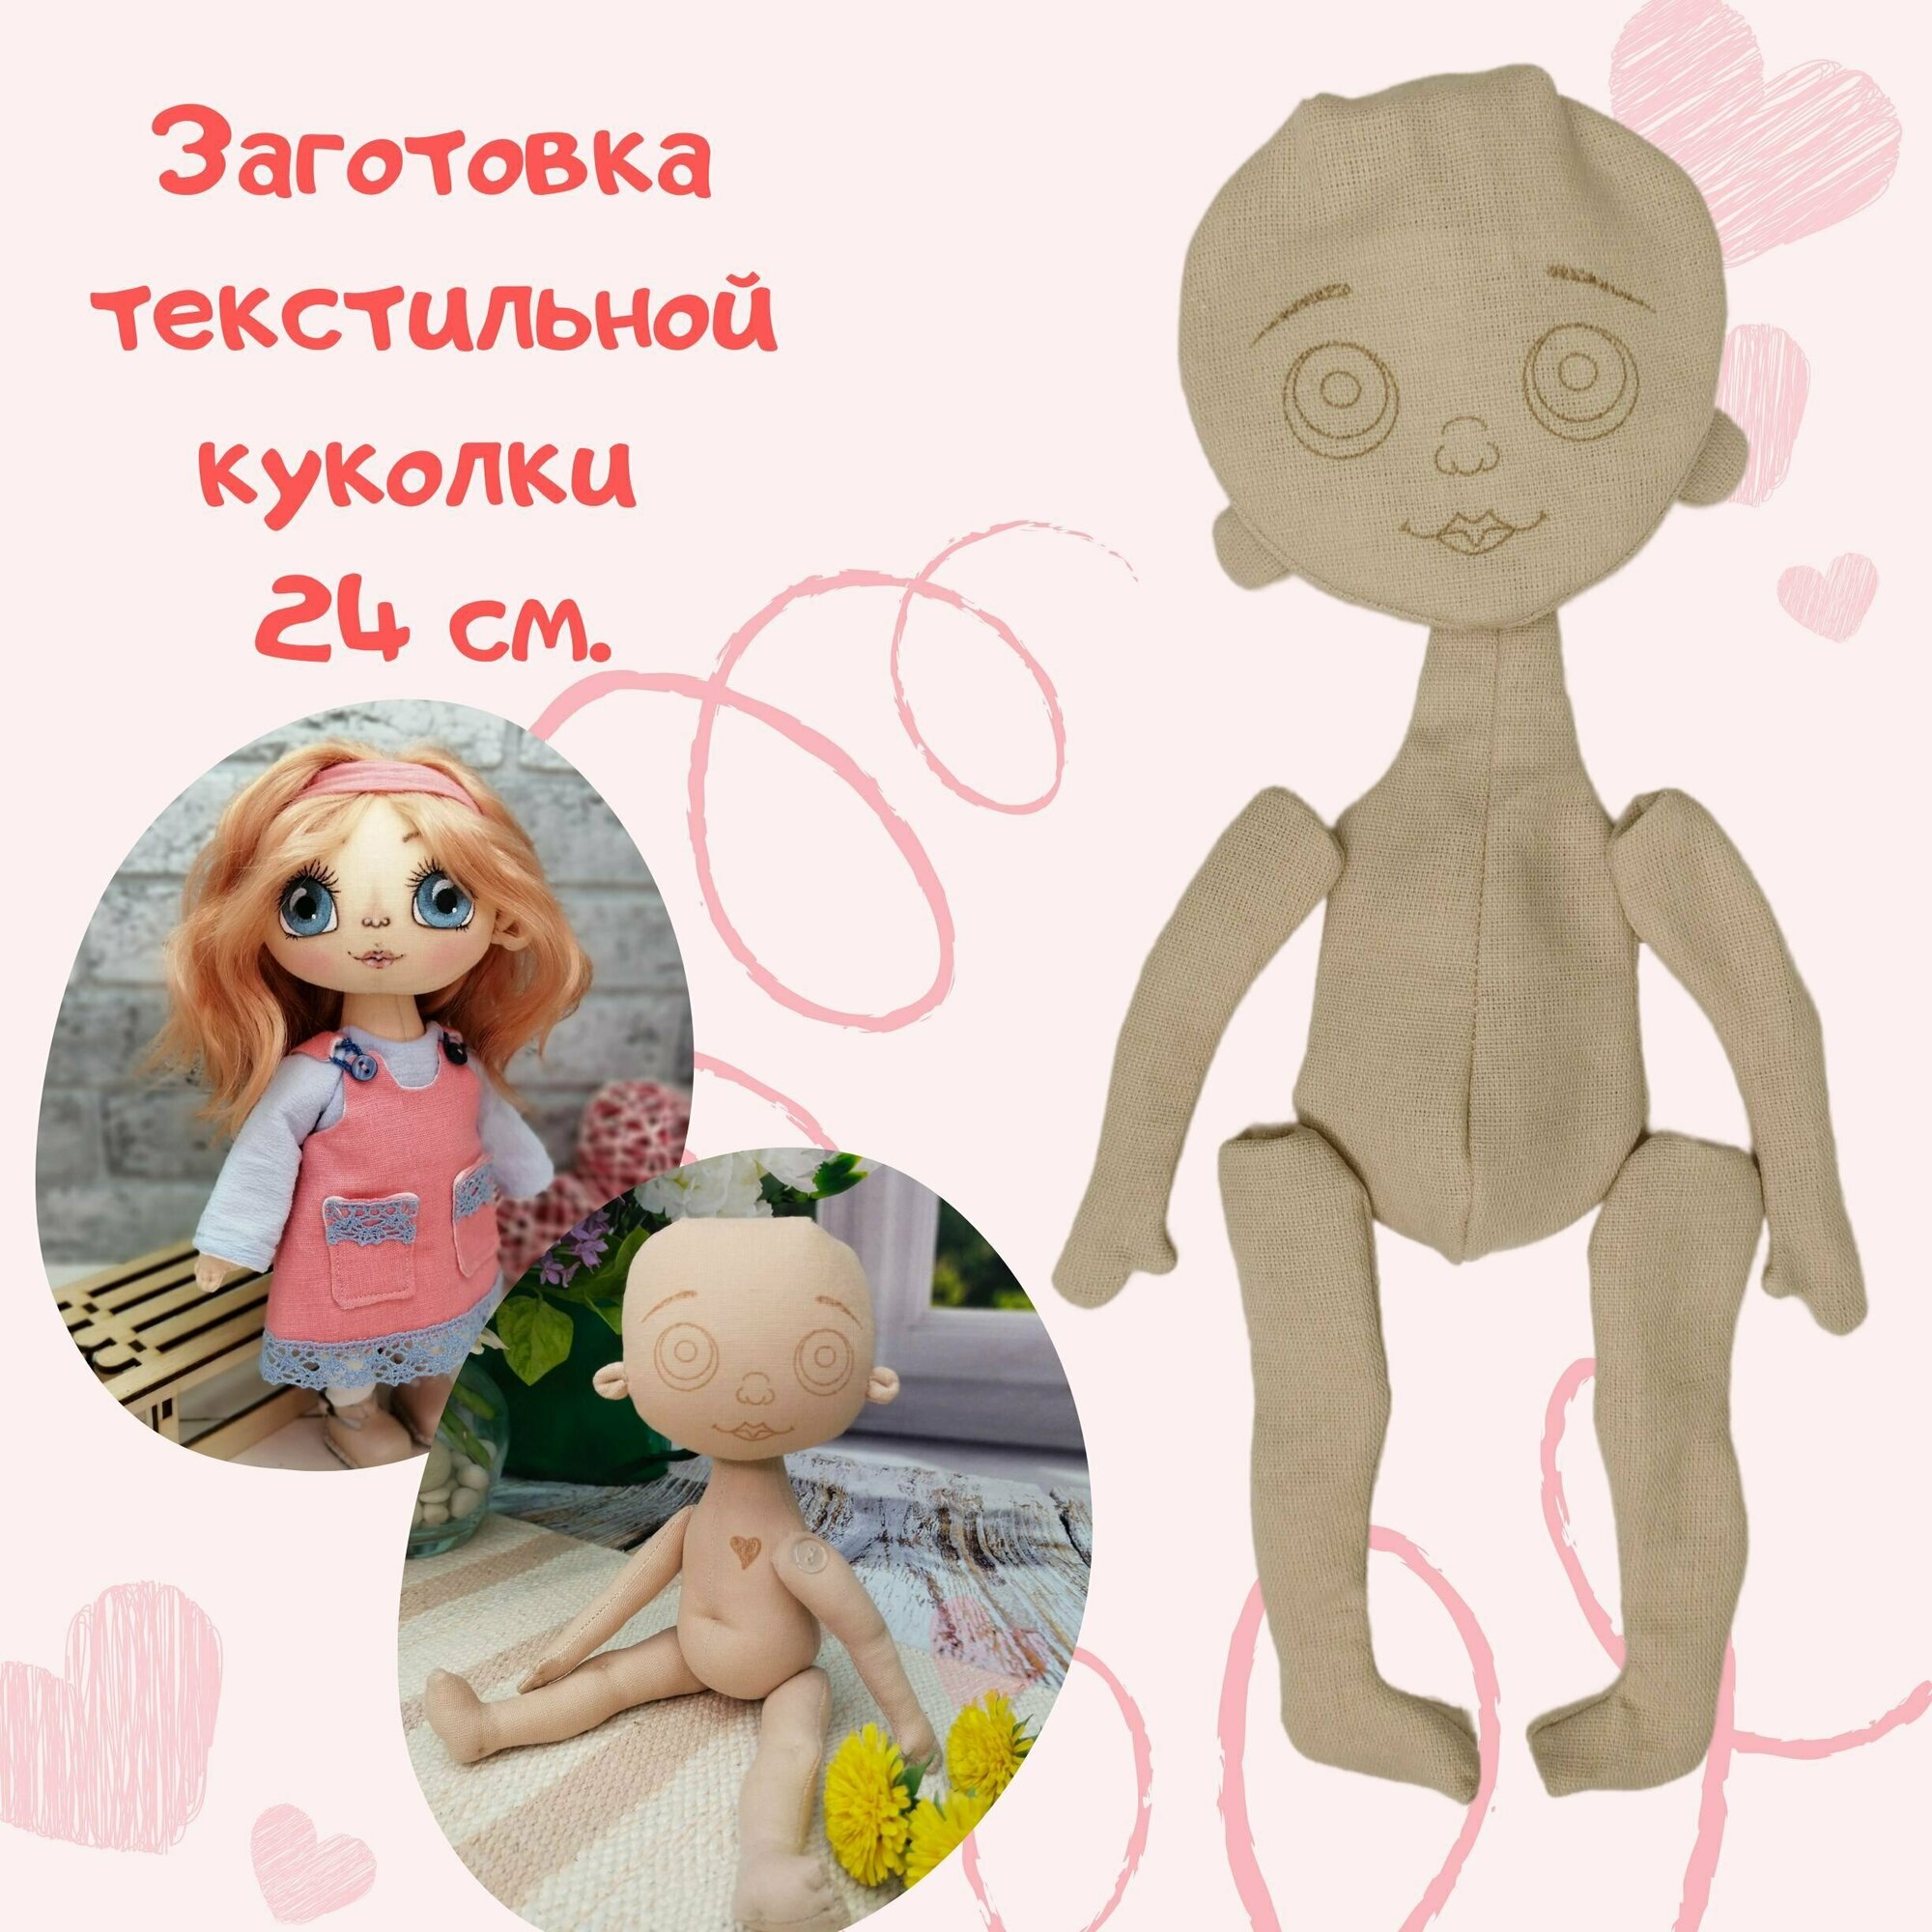 Заготовка текстильной куклы 24 см.